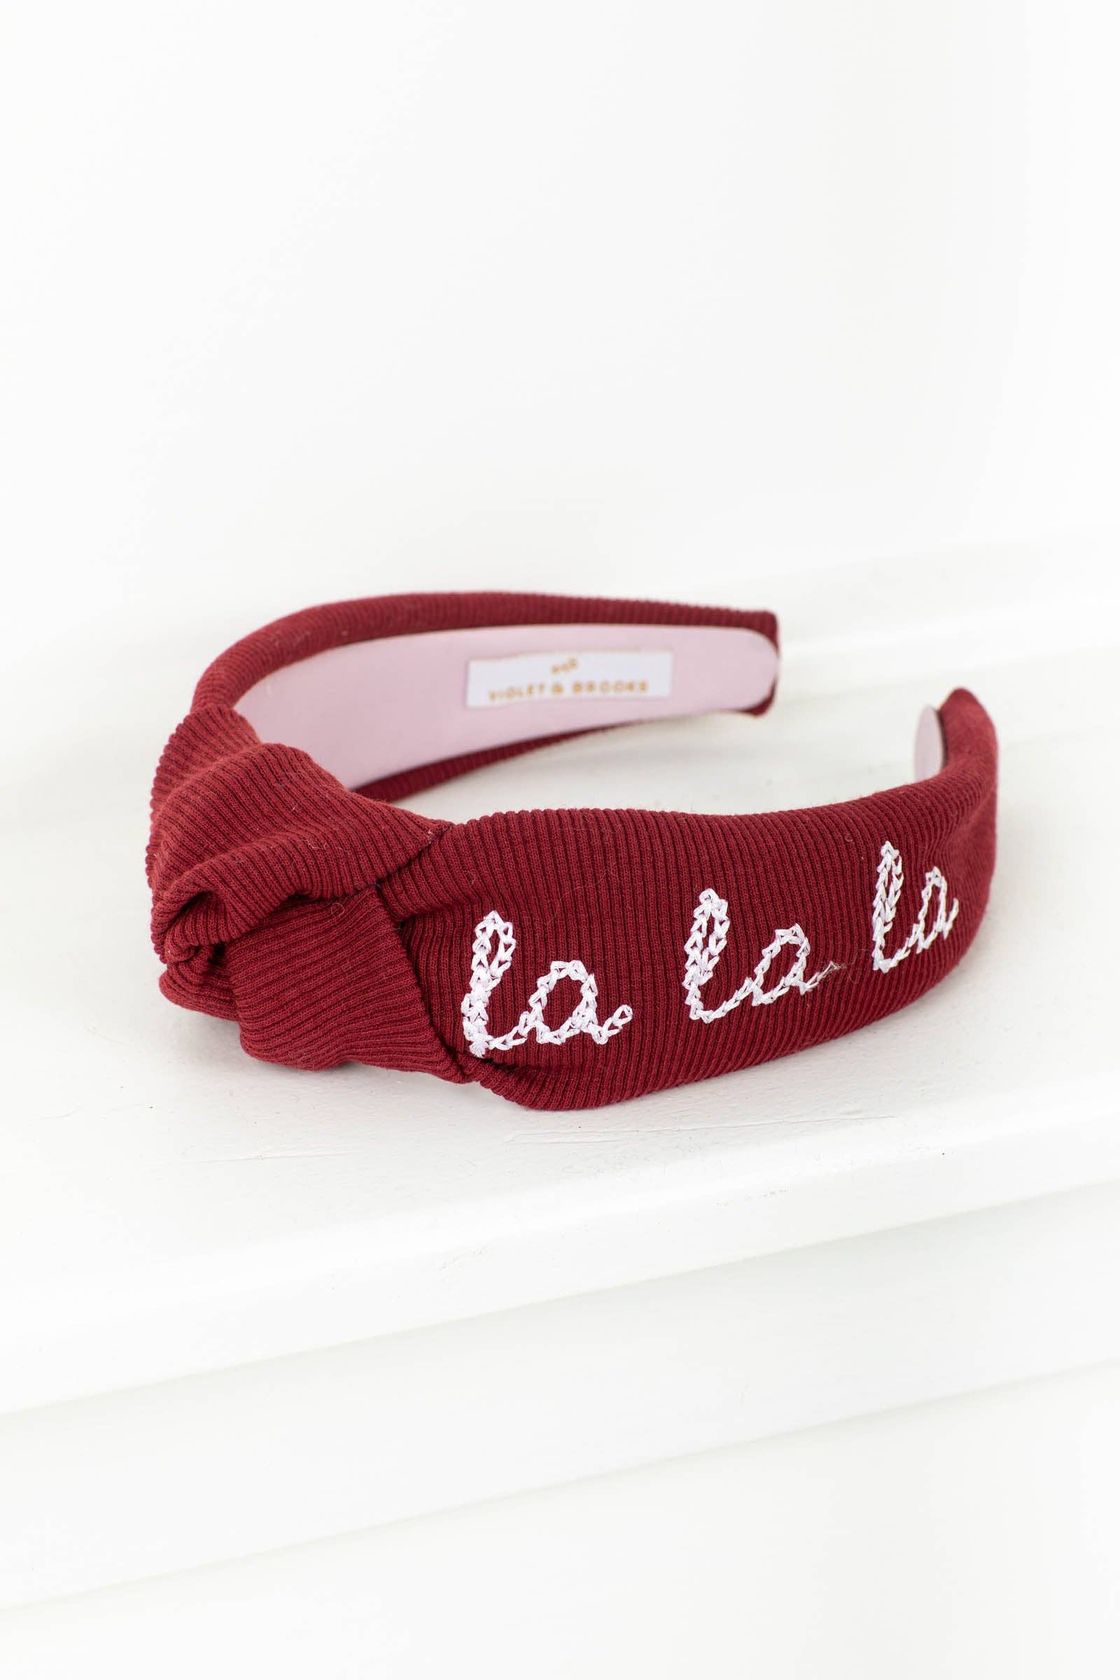 Fa La La Embroidered Headband - Red